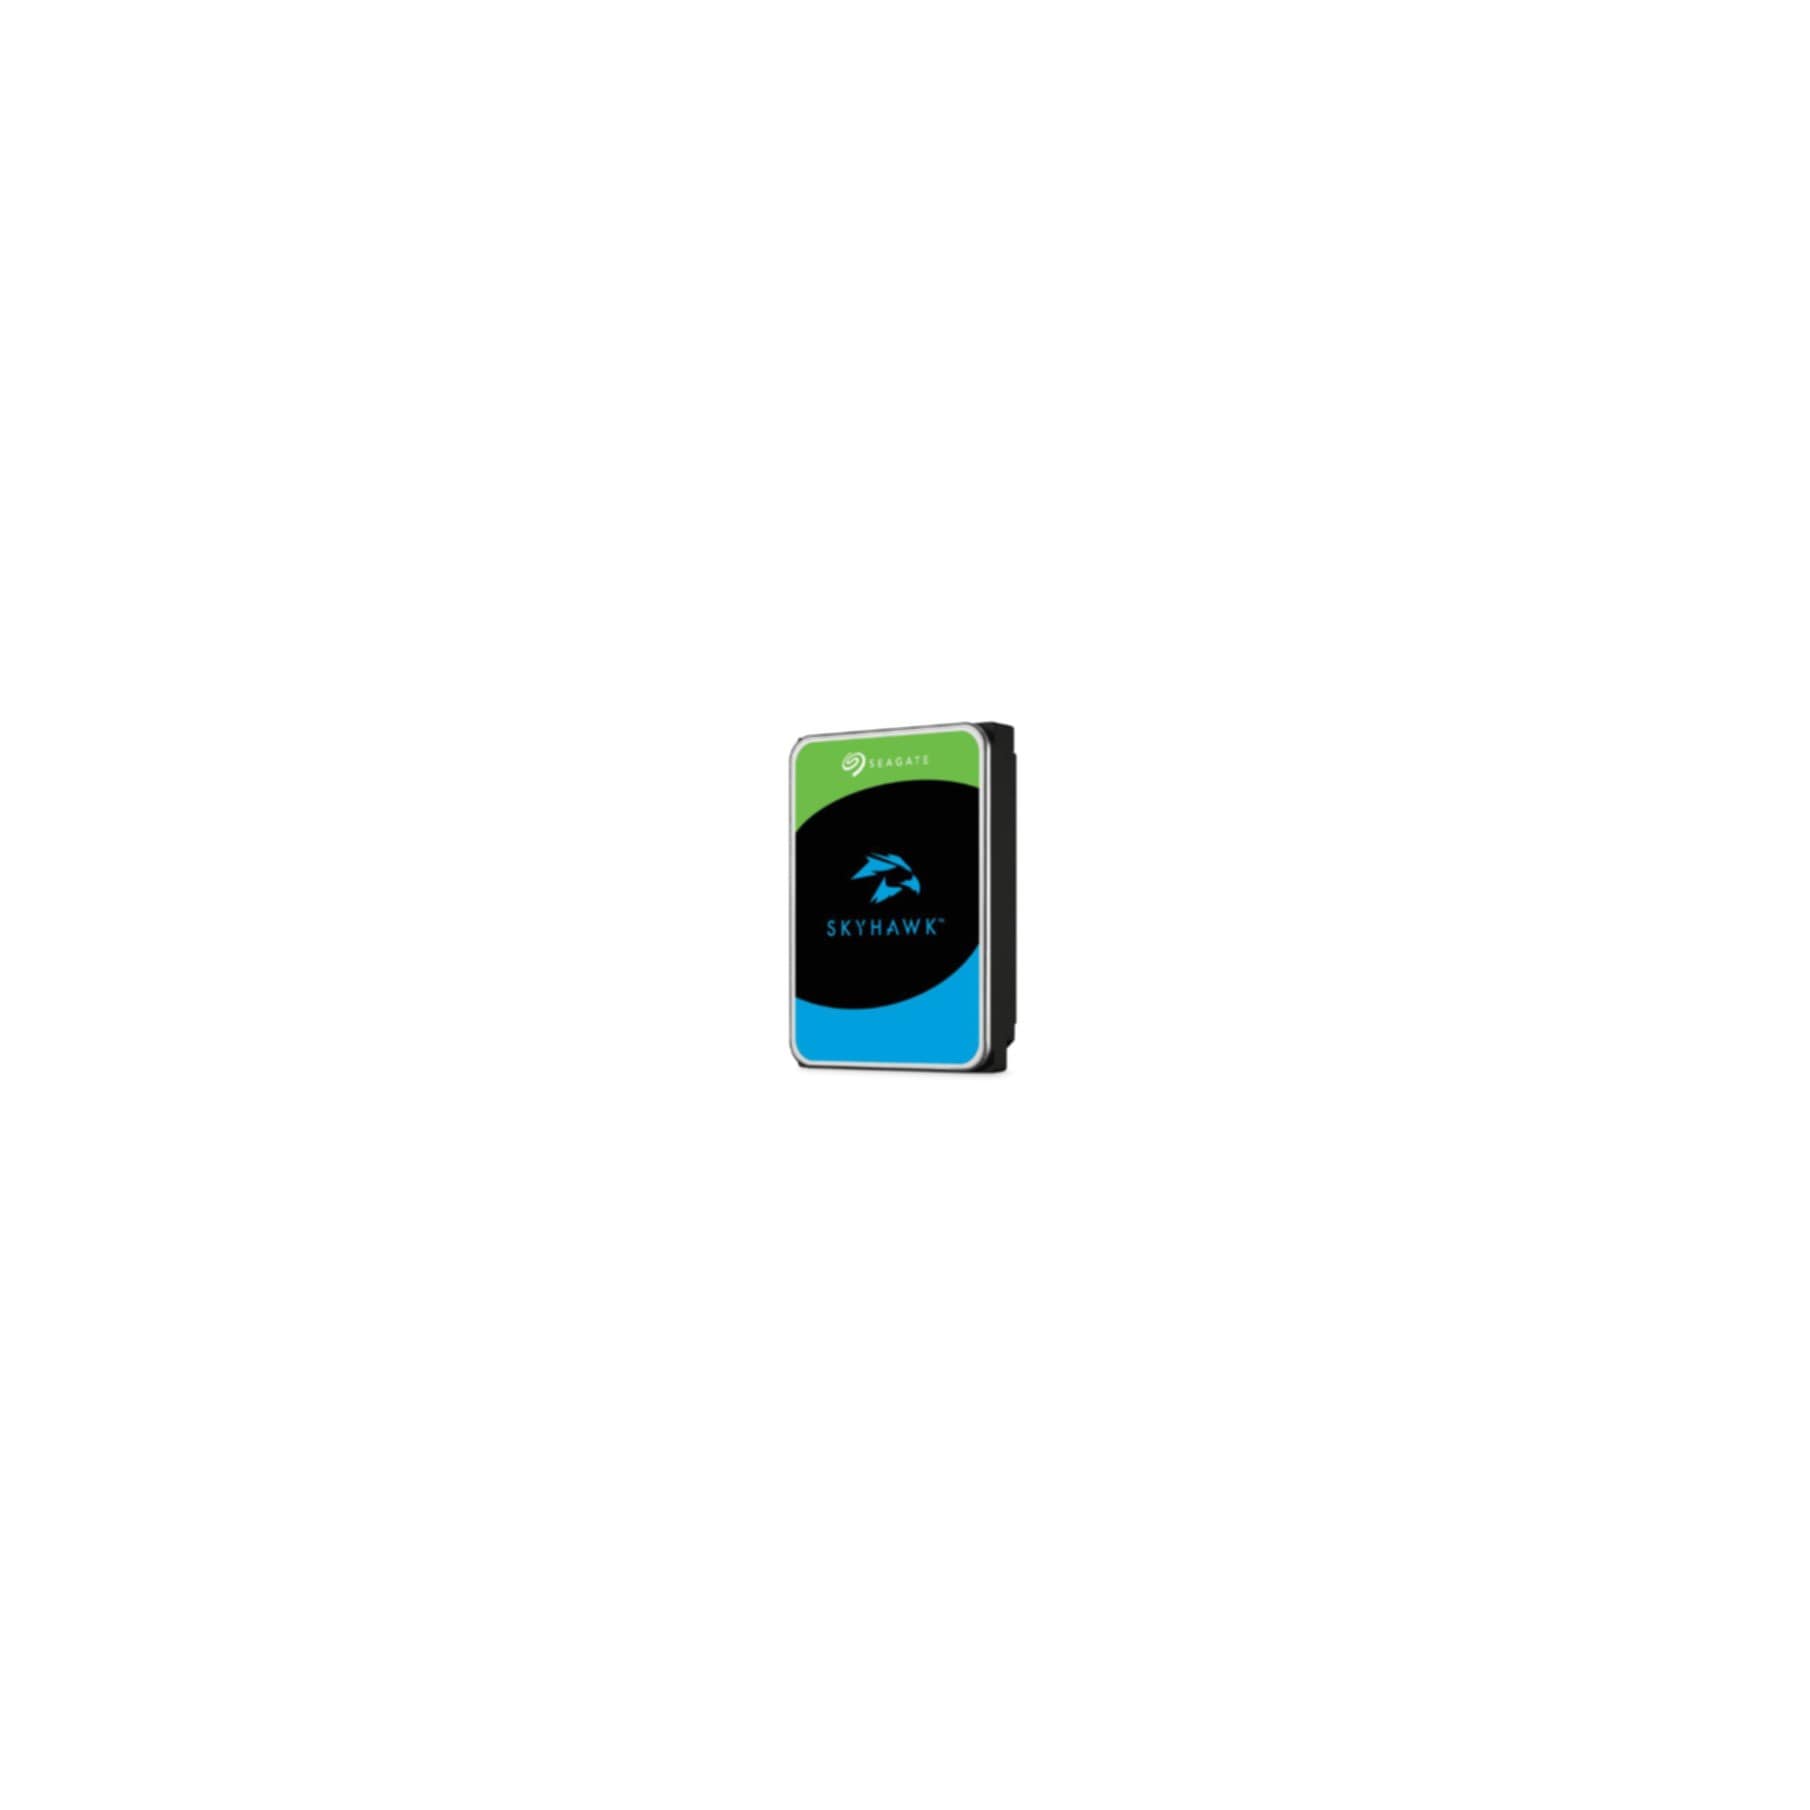 Seagate Interne HDD-Festplatte »SkyHawk«